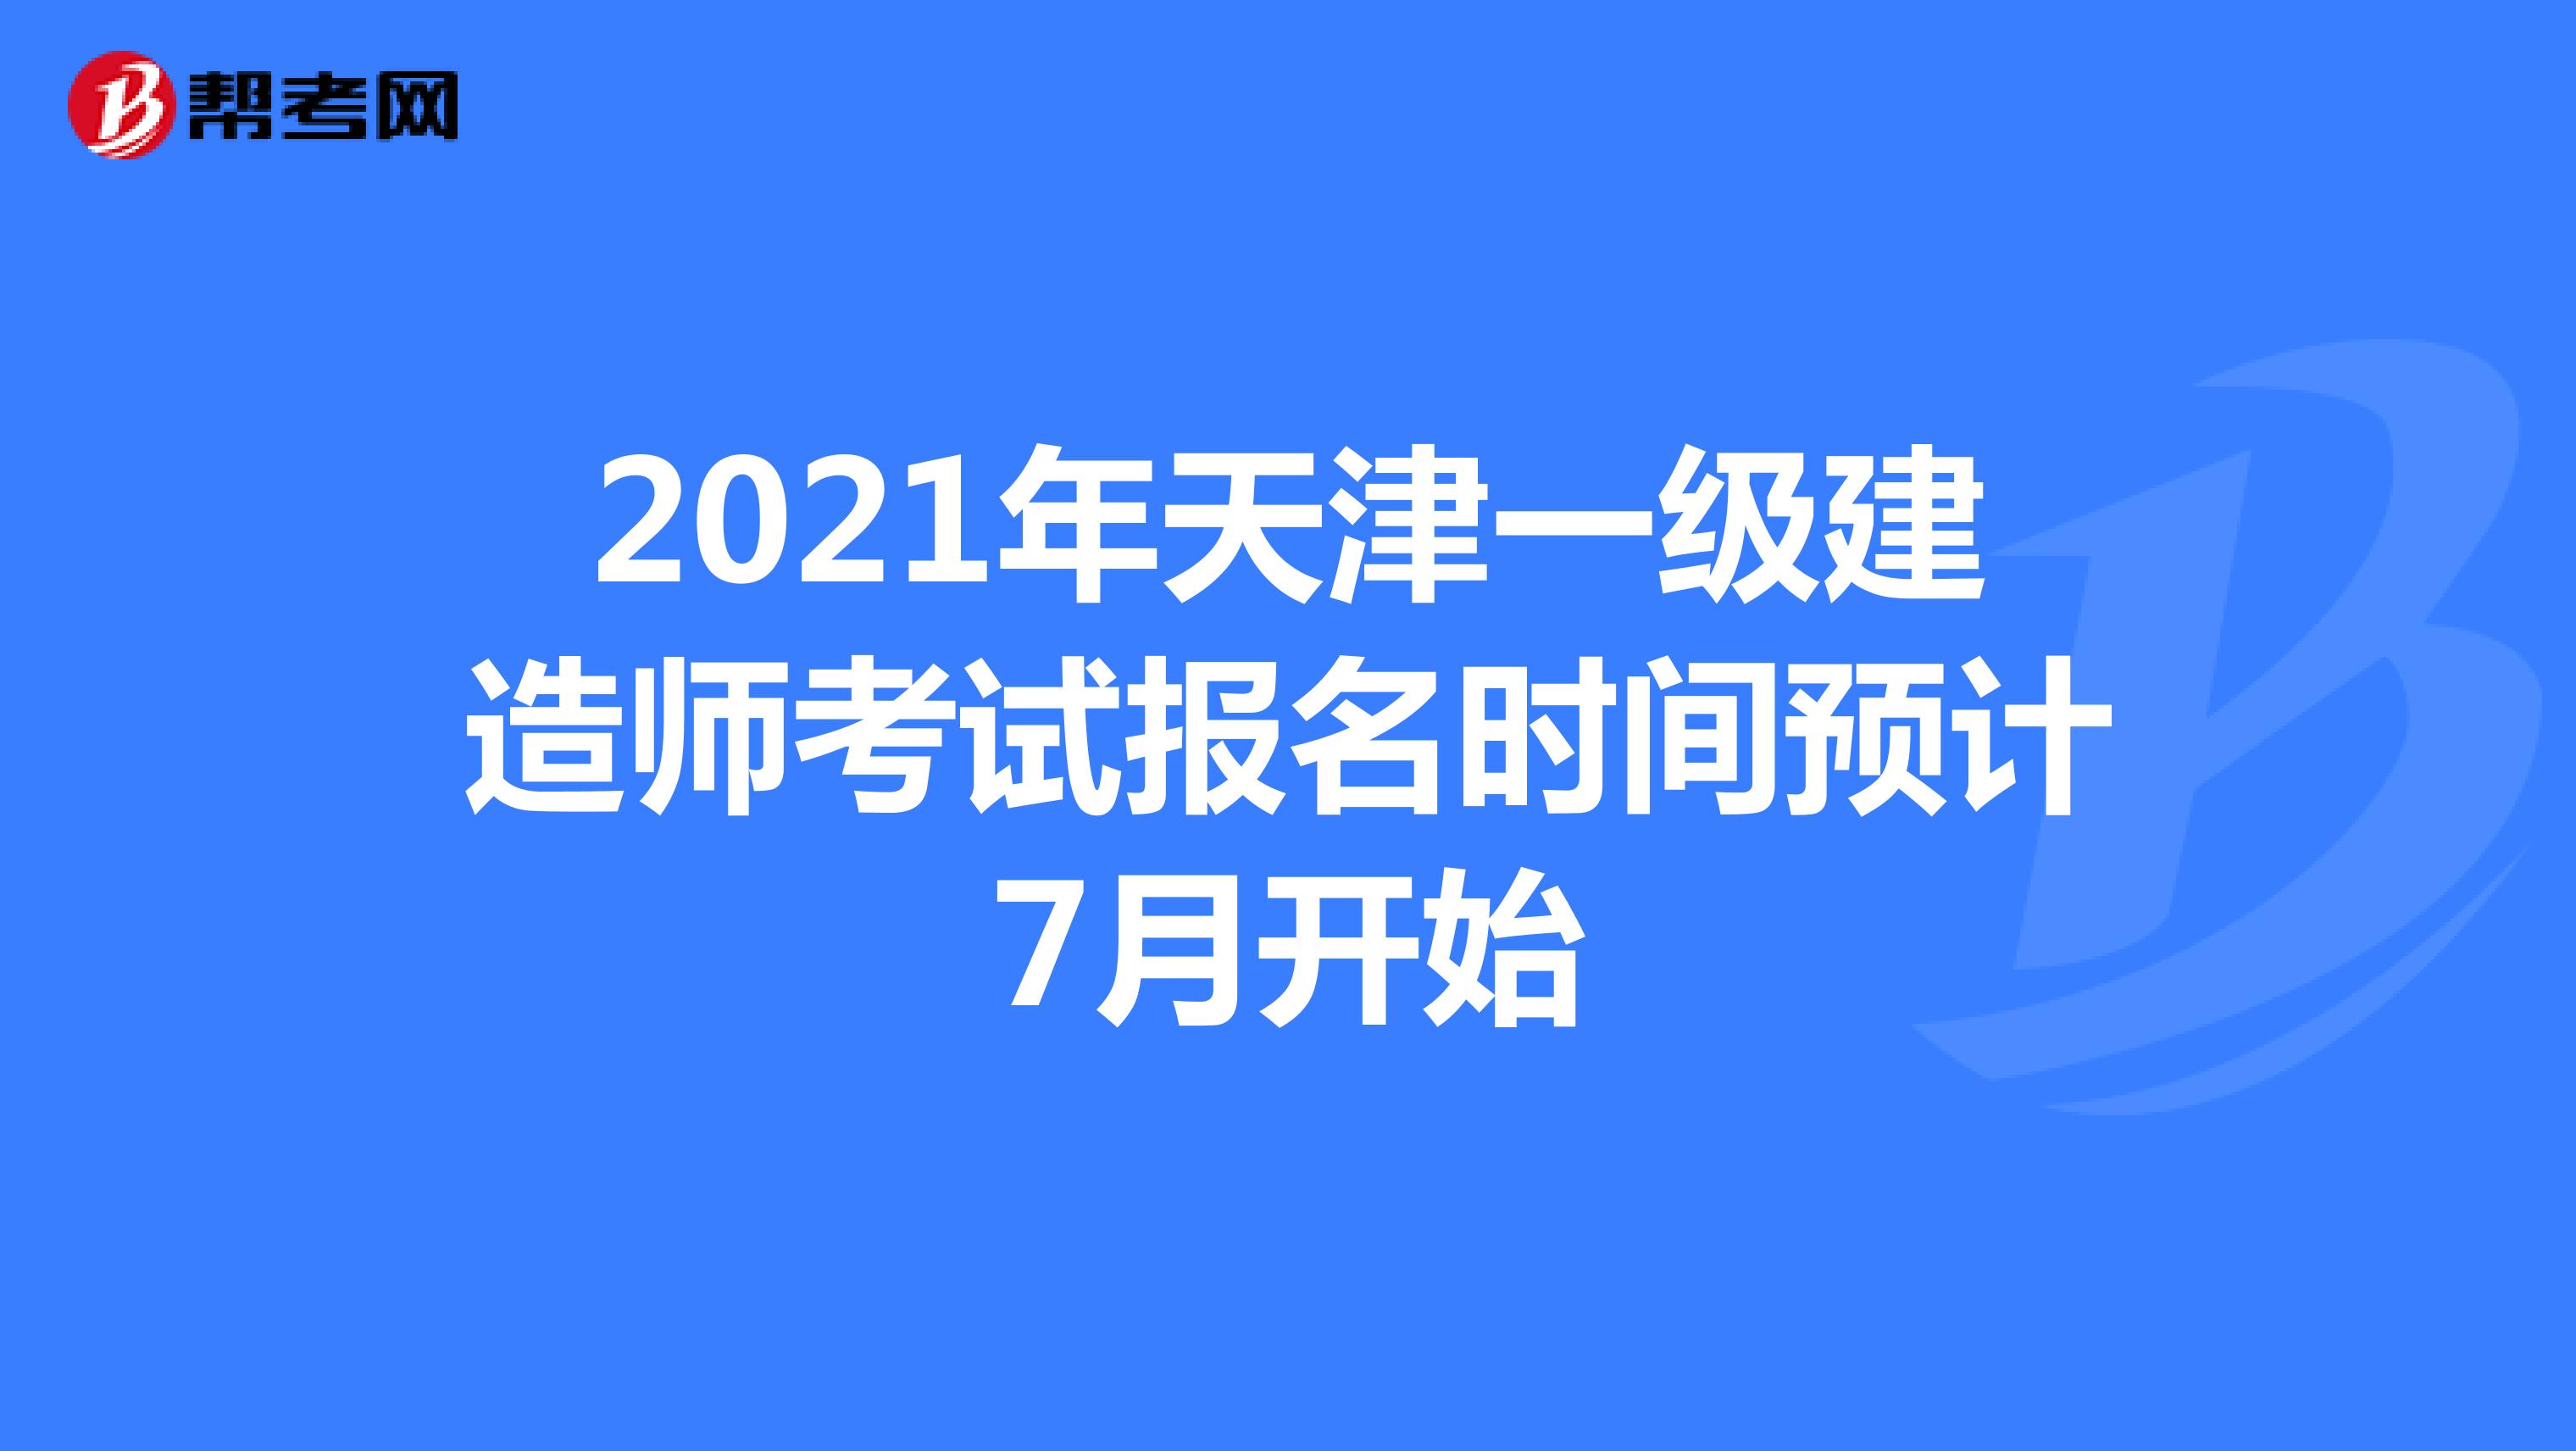 2021年天津一级建造师考试报名时间预计7月开始